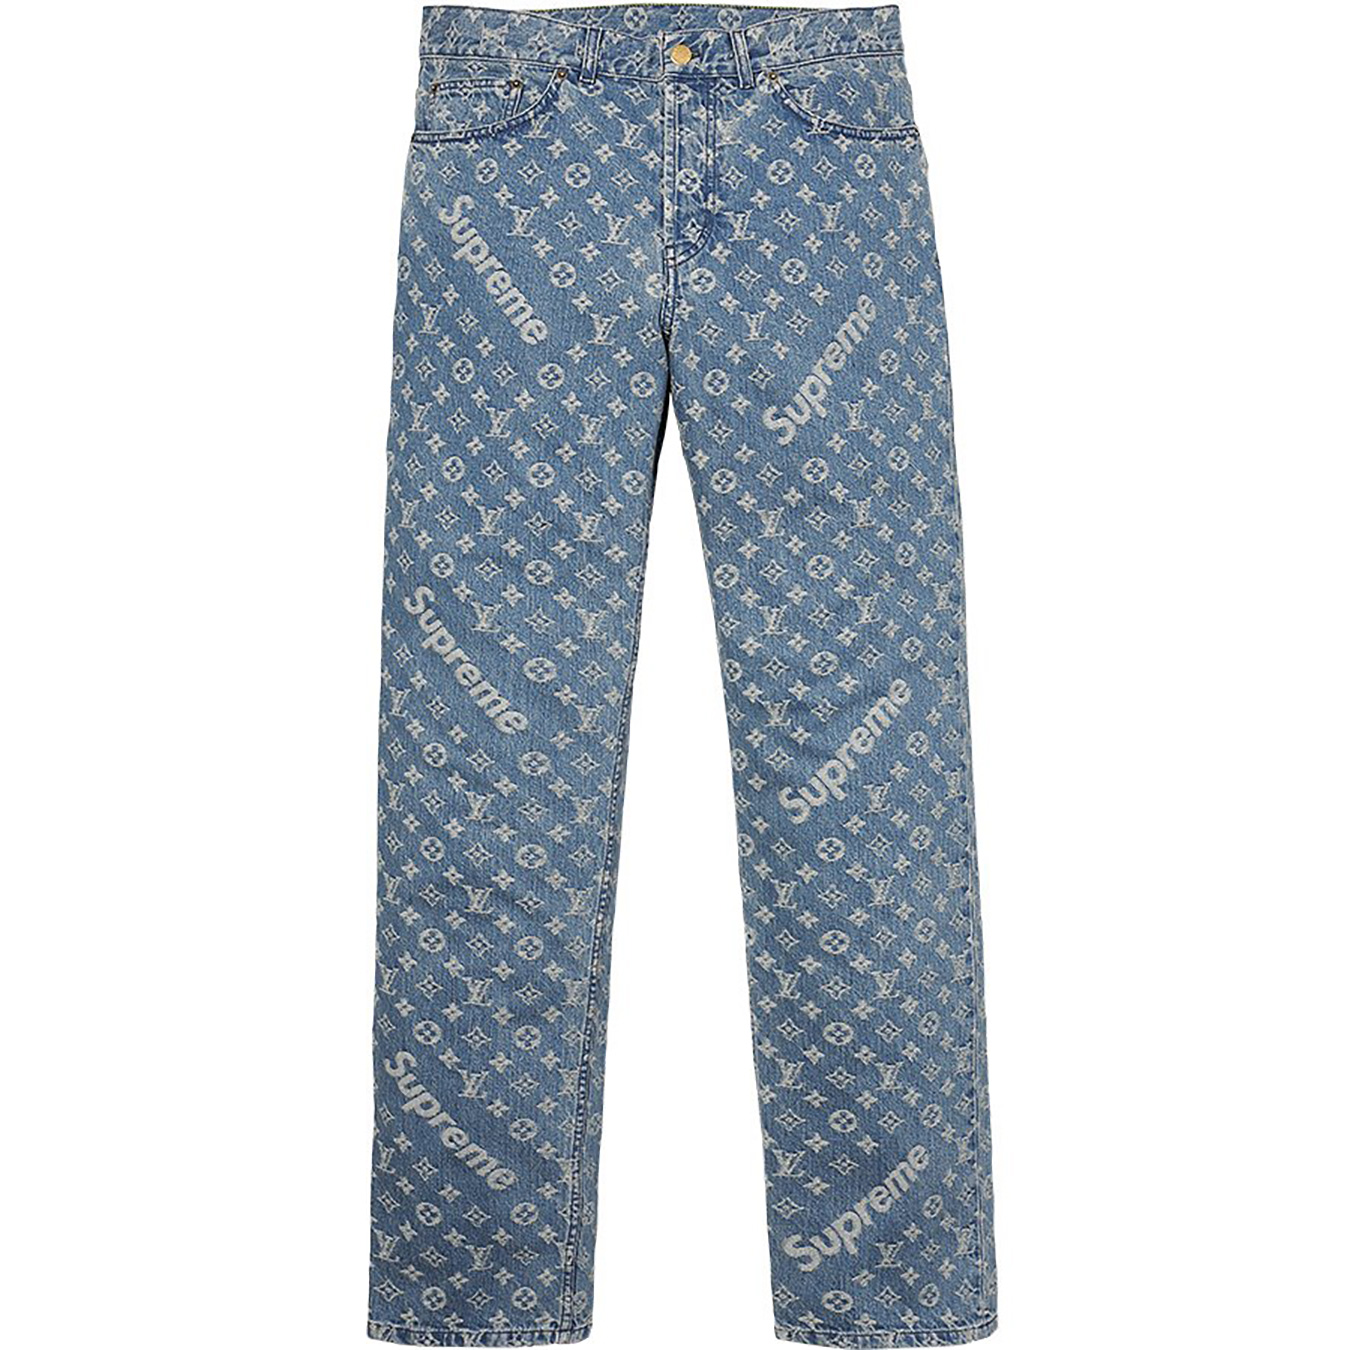 Louis Vuitton/Supreme Jacquard Denim 5-Pocket Jean